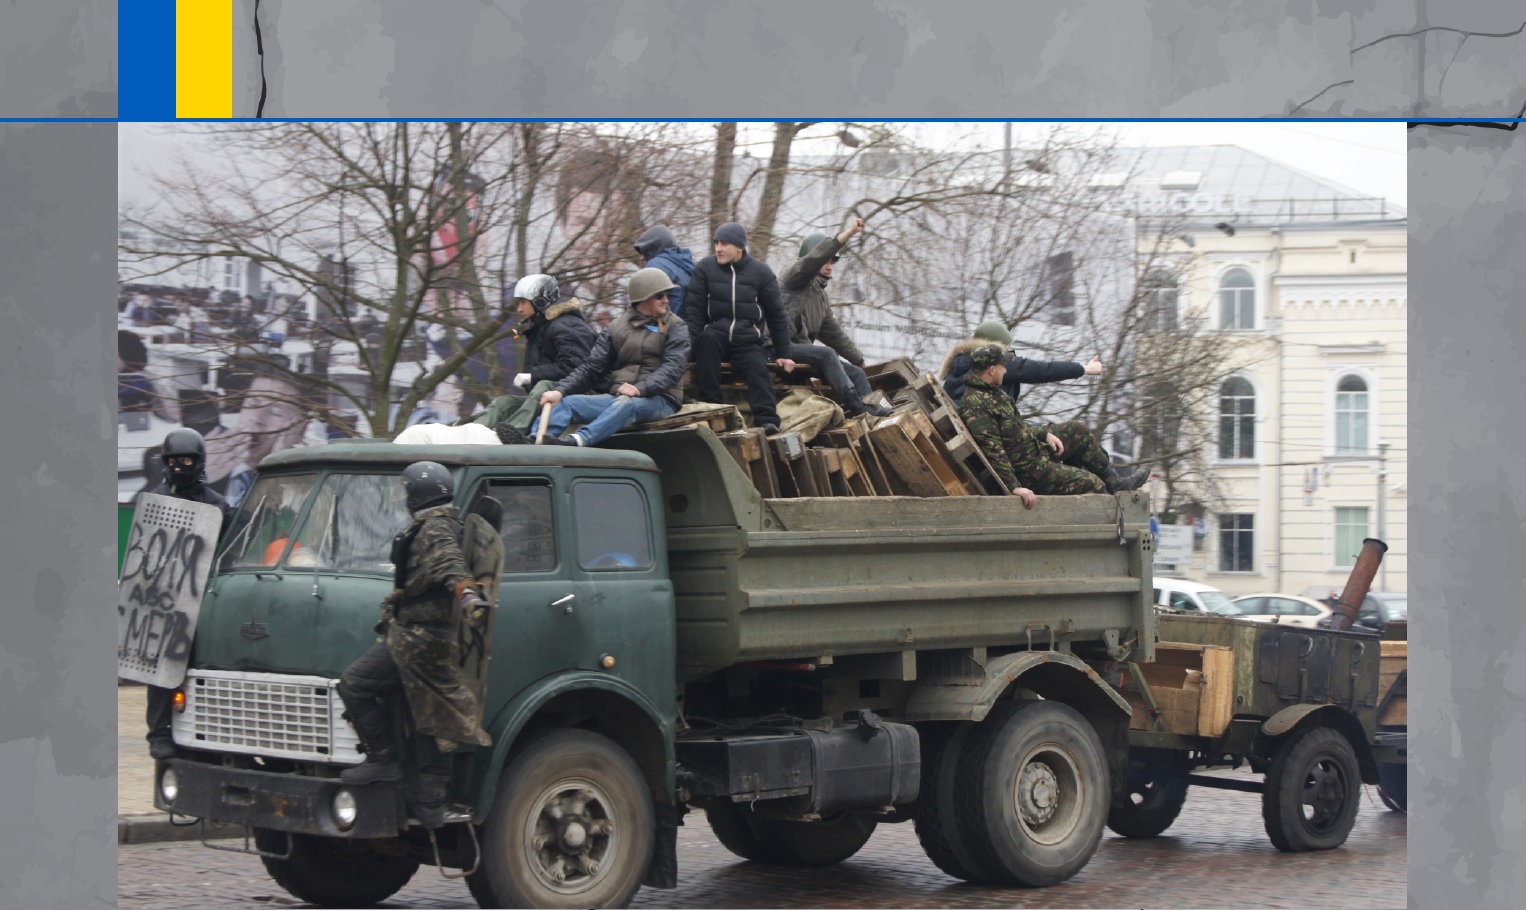 Wystawa "Ukraiński Majdan 2013-2014. Rewolucja Godności” w Lublinie - Zdjęcie główne